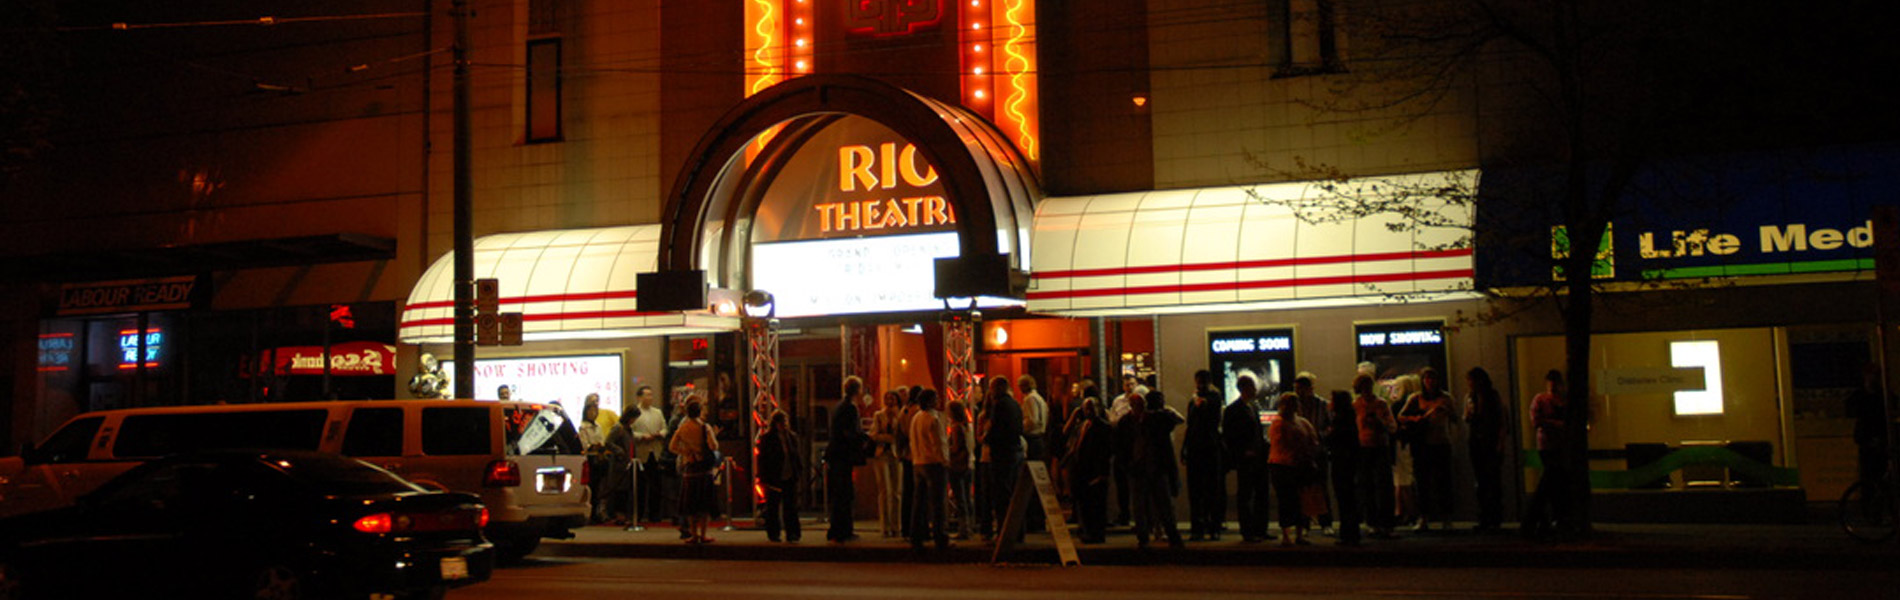 Save the Rio Telethon at the Rio Theatre